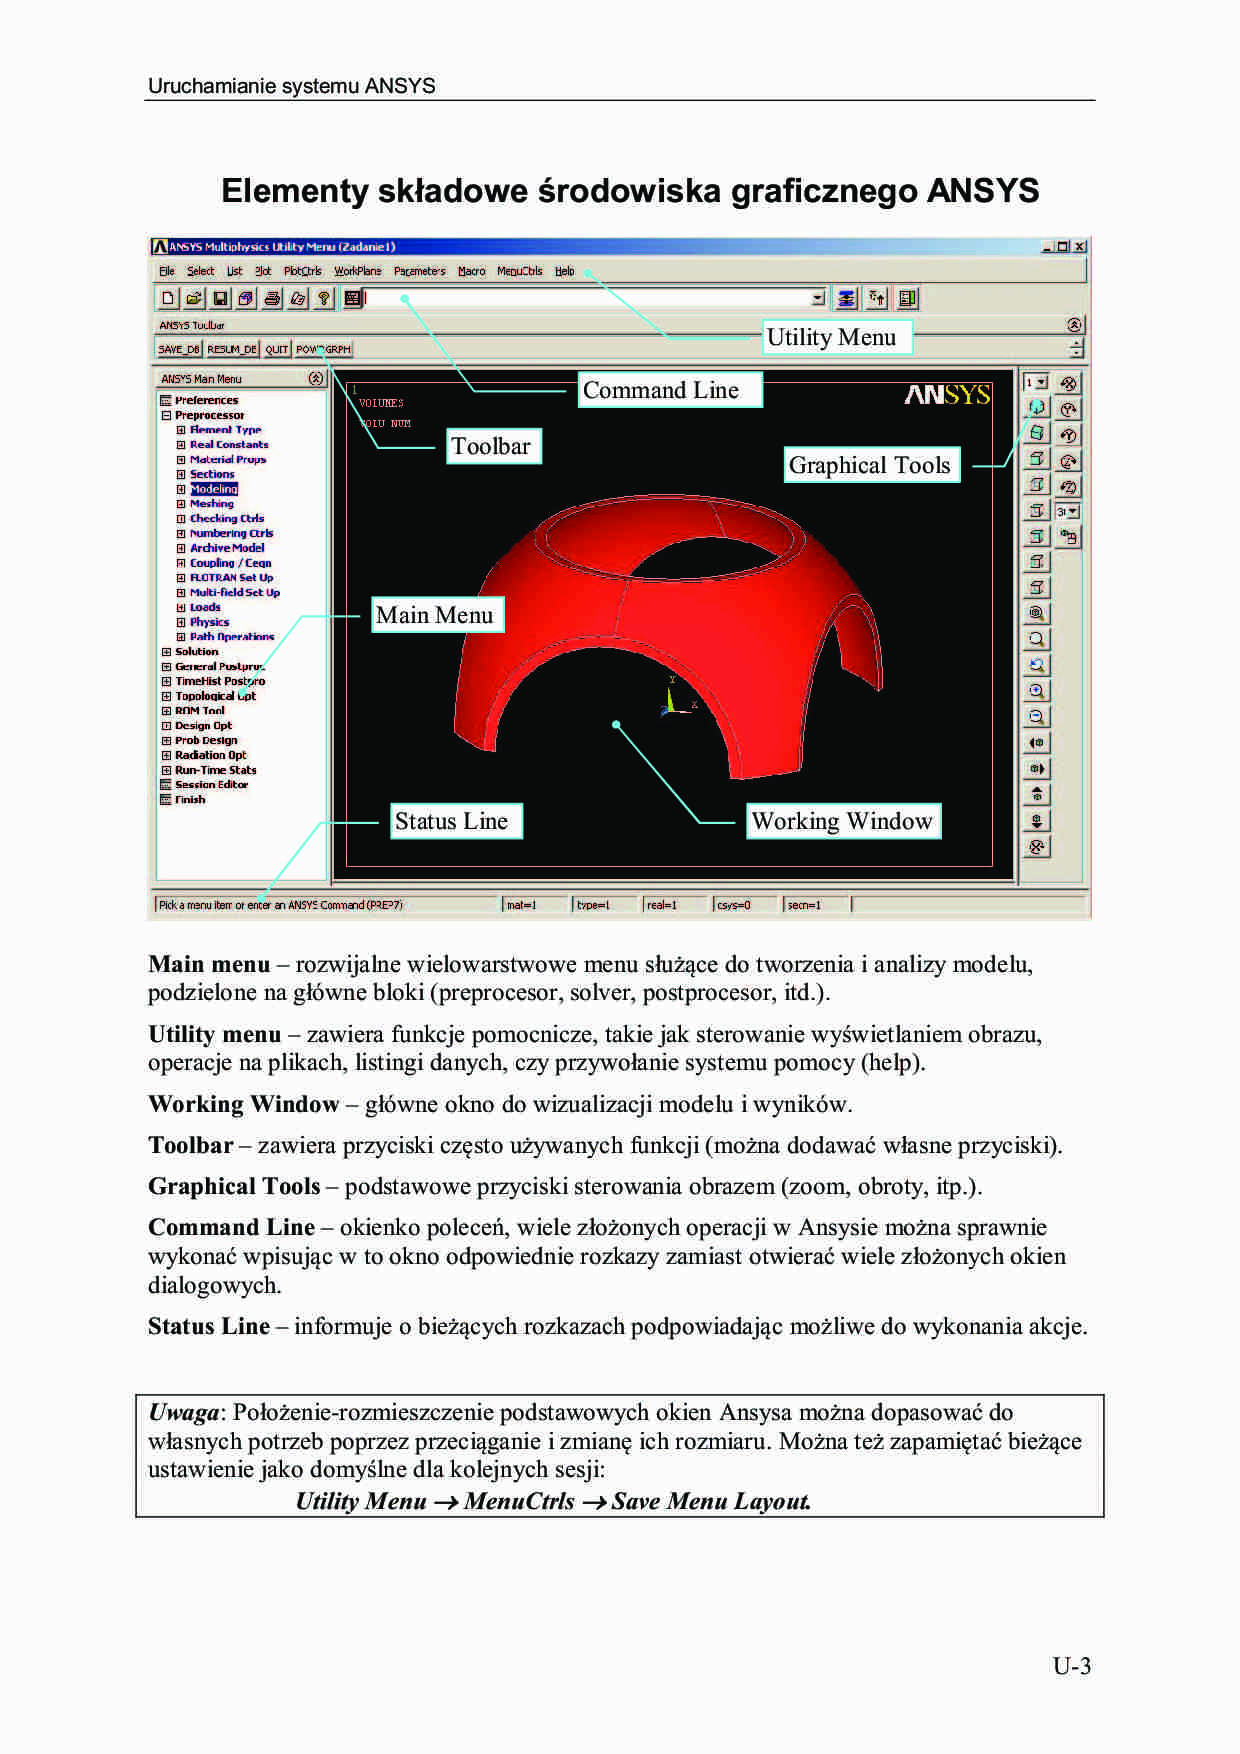 Wspornik - PSN, Elementy składowe środowiska graficznego ANSYS - strona 1